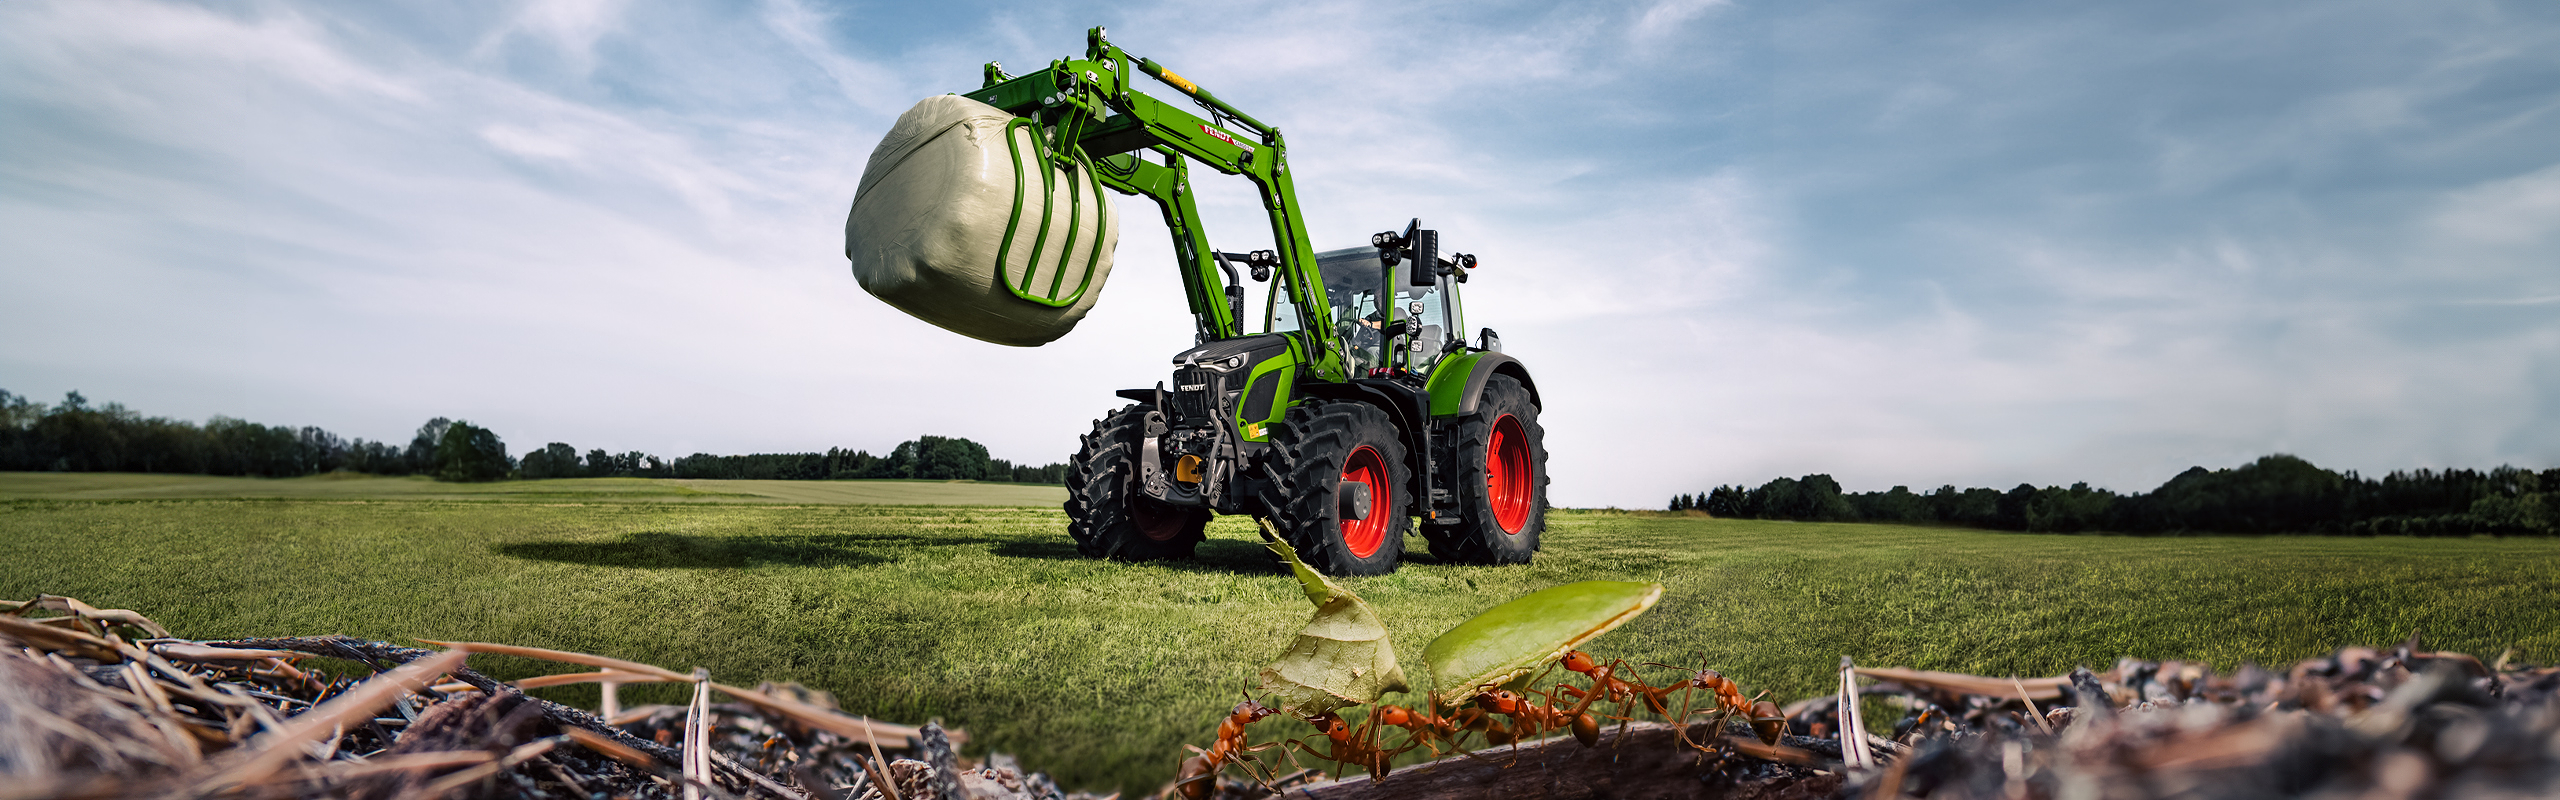 En Fendt 600 Vario-traktor står på jordet og løfter en siloballe. Maur kan sees i forgrunnen.